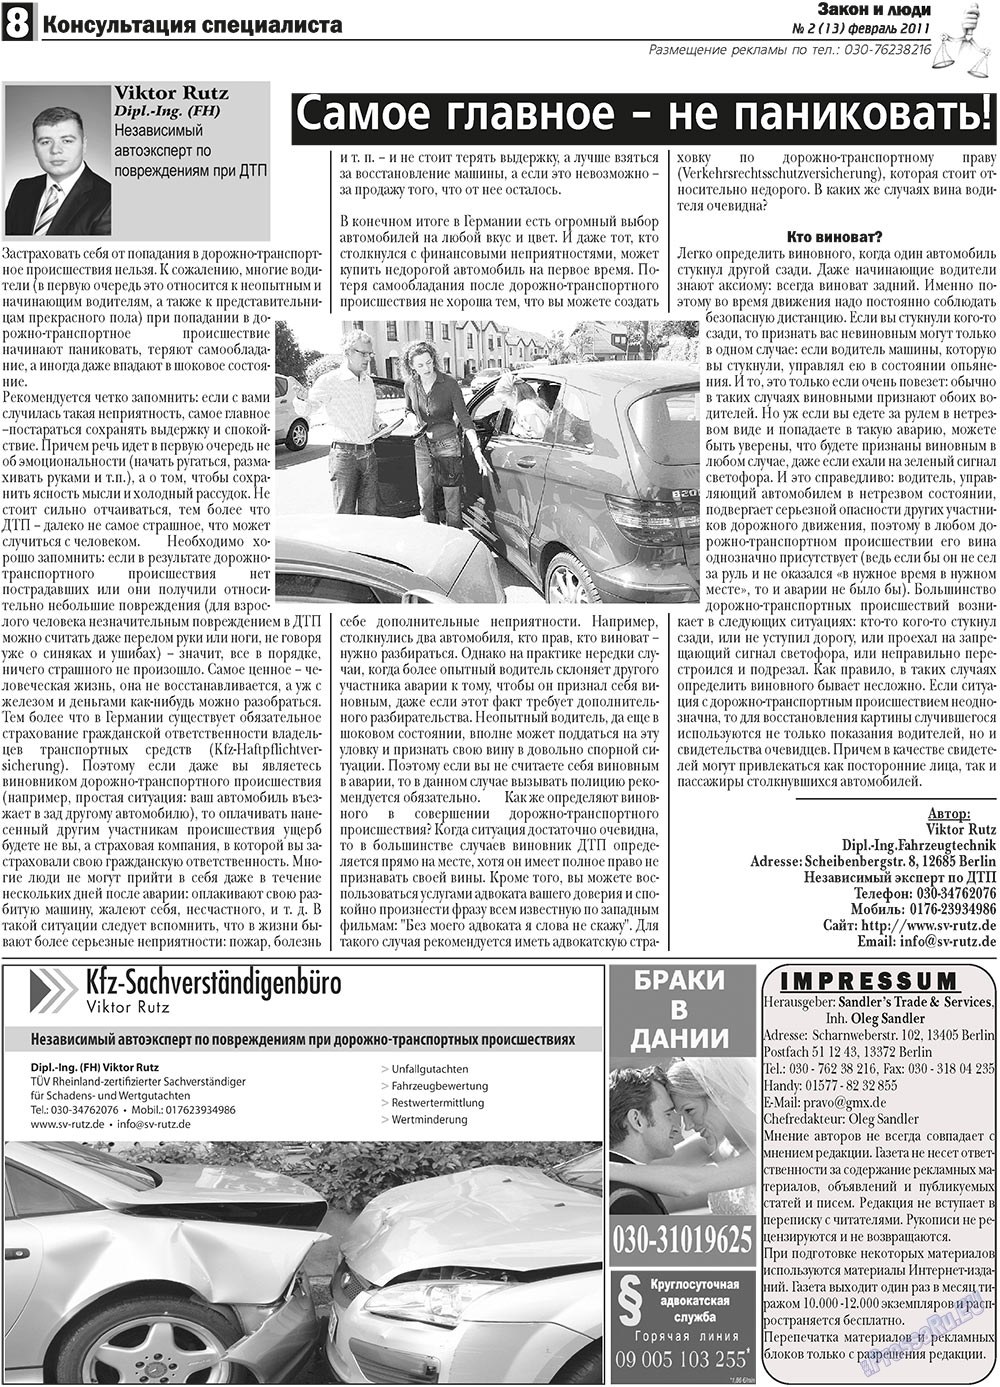 Закон и люди (газета). 2011 год, номер 2, стр. 8